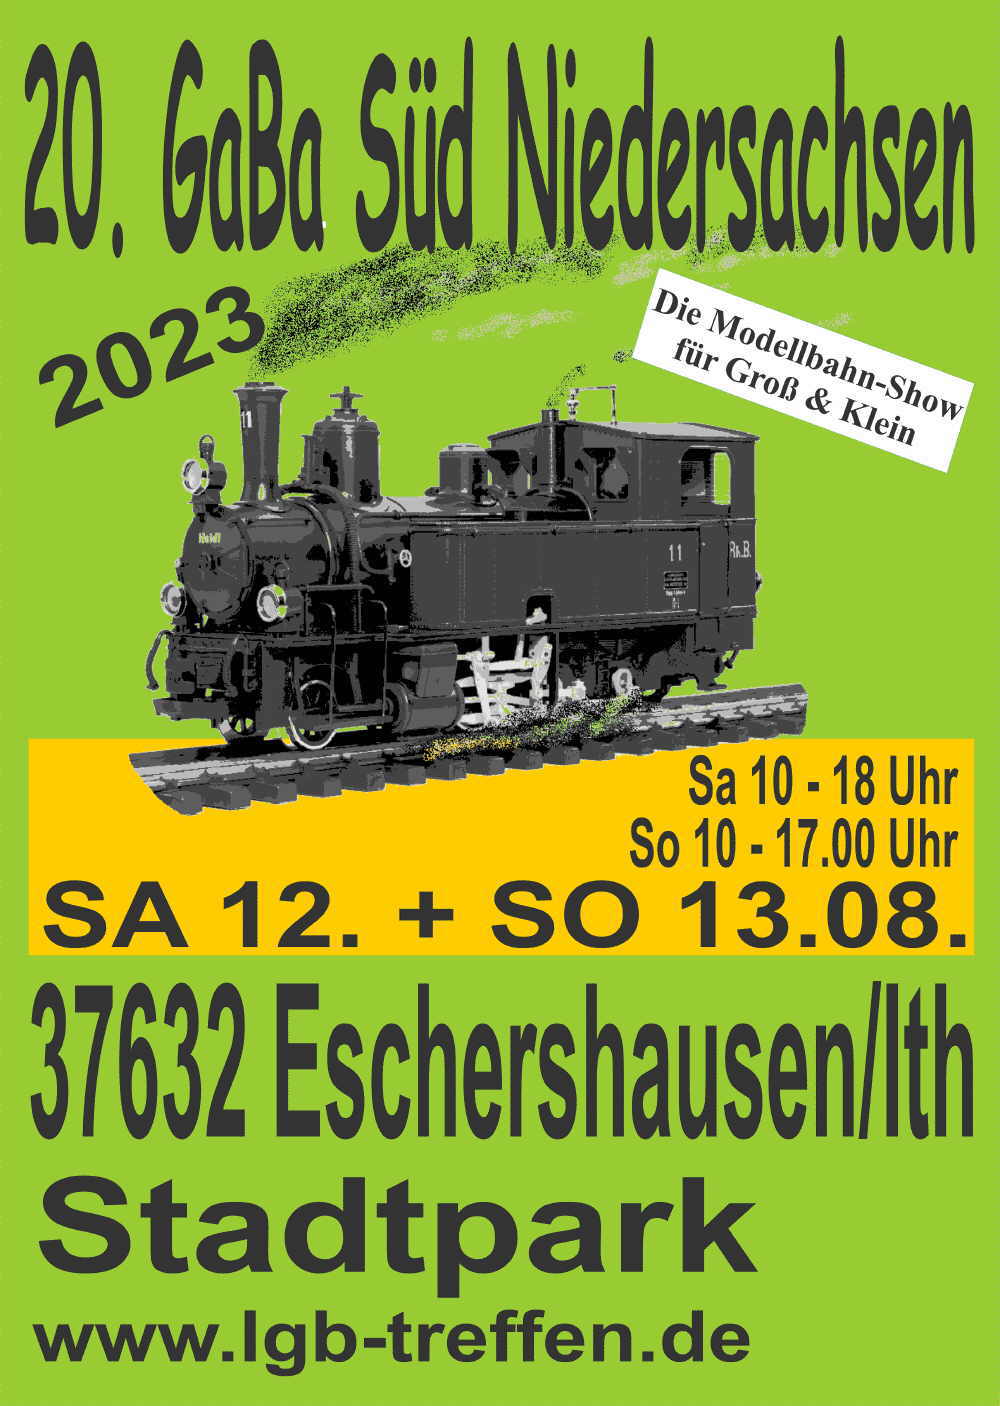 20. Gartenbahntreffen Süd Niedersachsen in Escherhausen/Ith am 12. und 13.08.2023. 